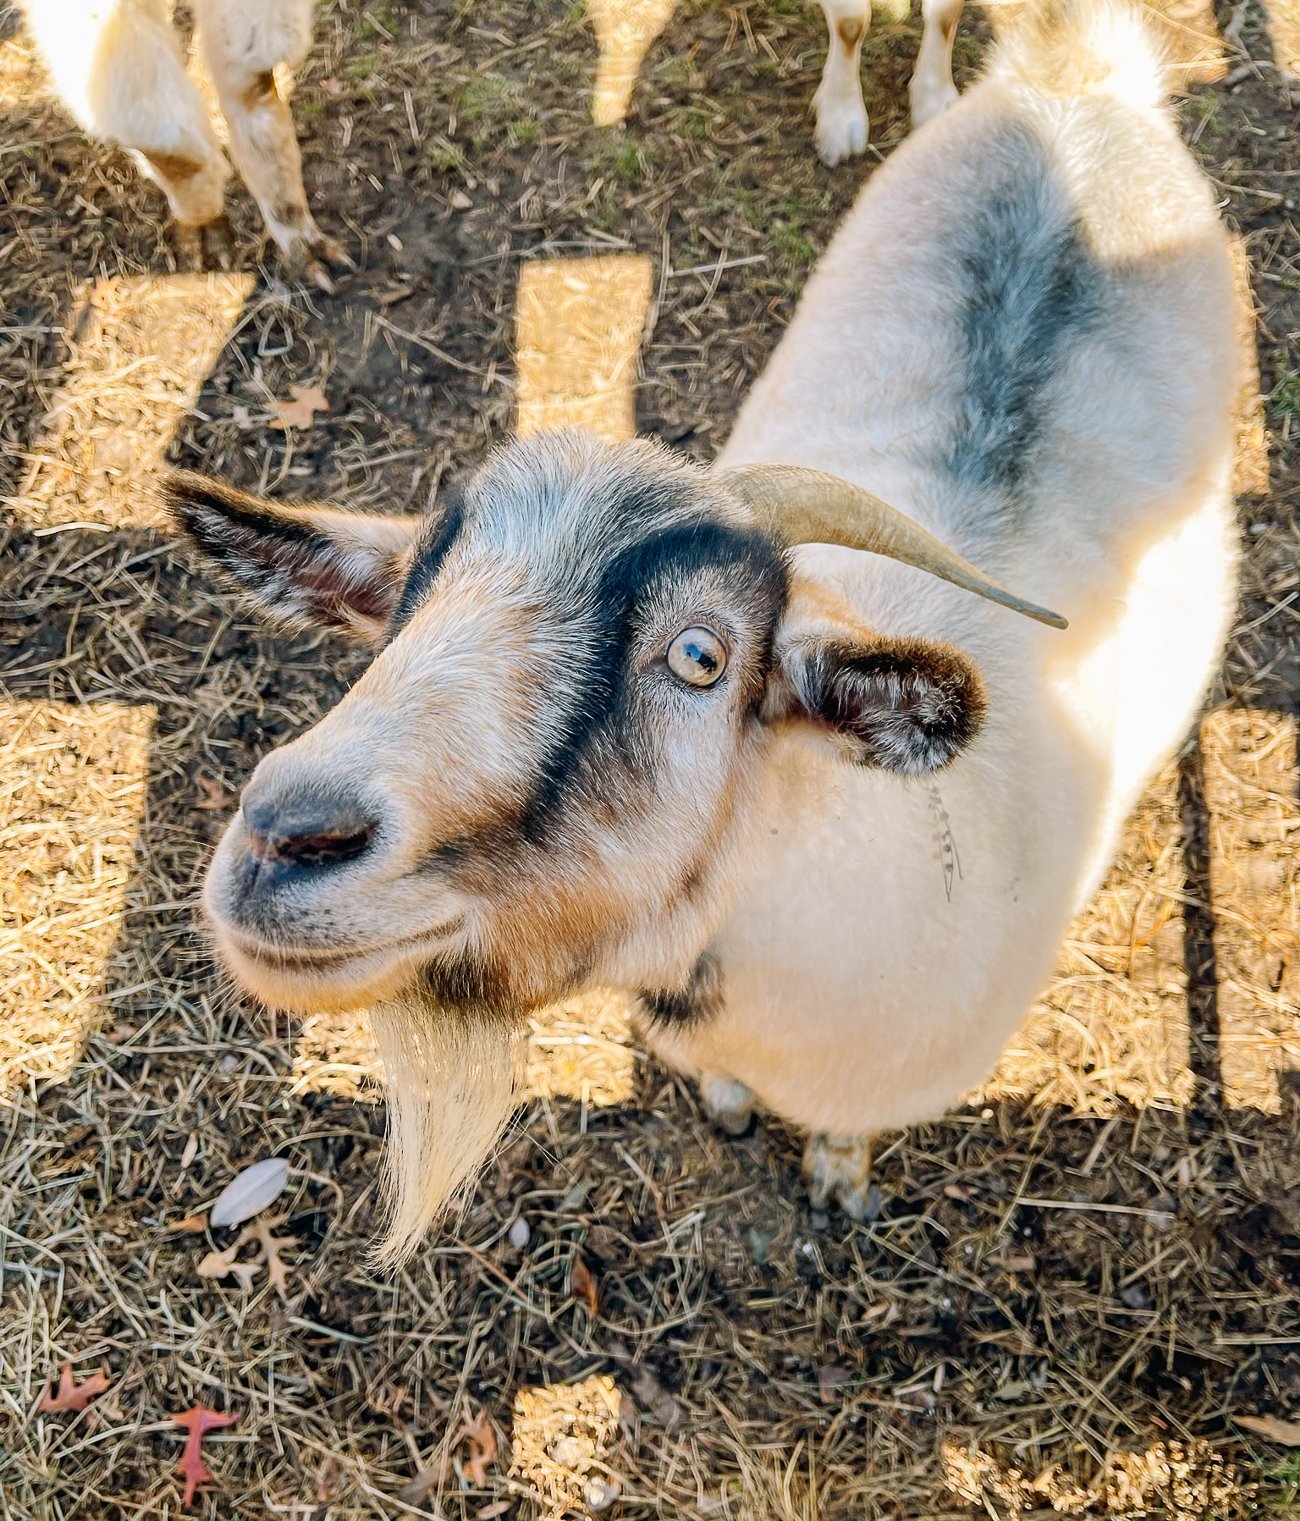 pygora goat looking at the camera